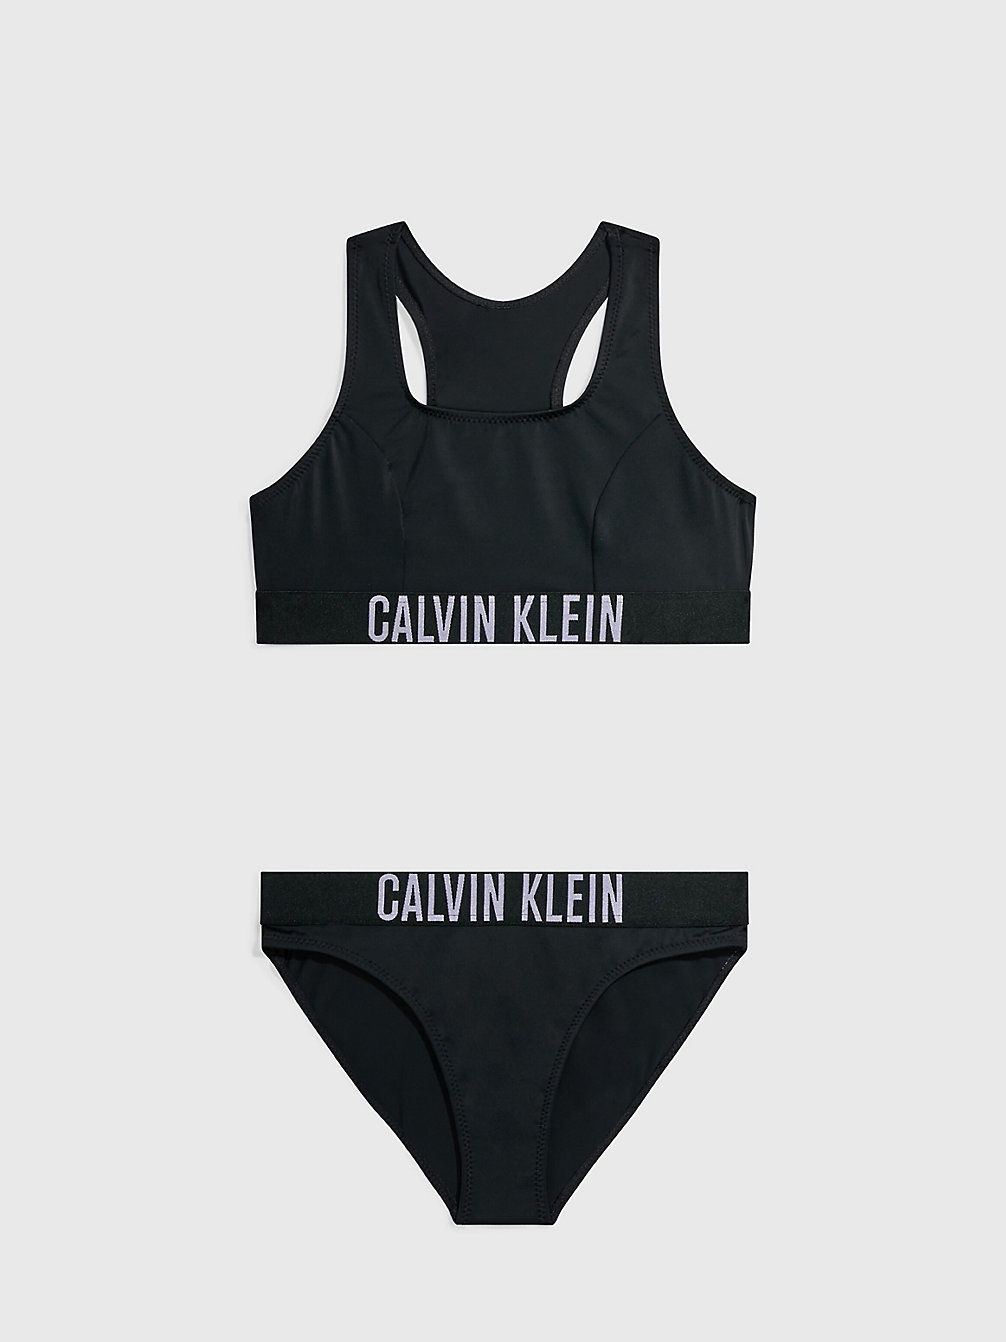 PVH BLACK Ensemble Bikini Brassière Pour Fille - Intense Power undefined girls Calvin Klein